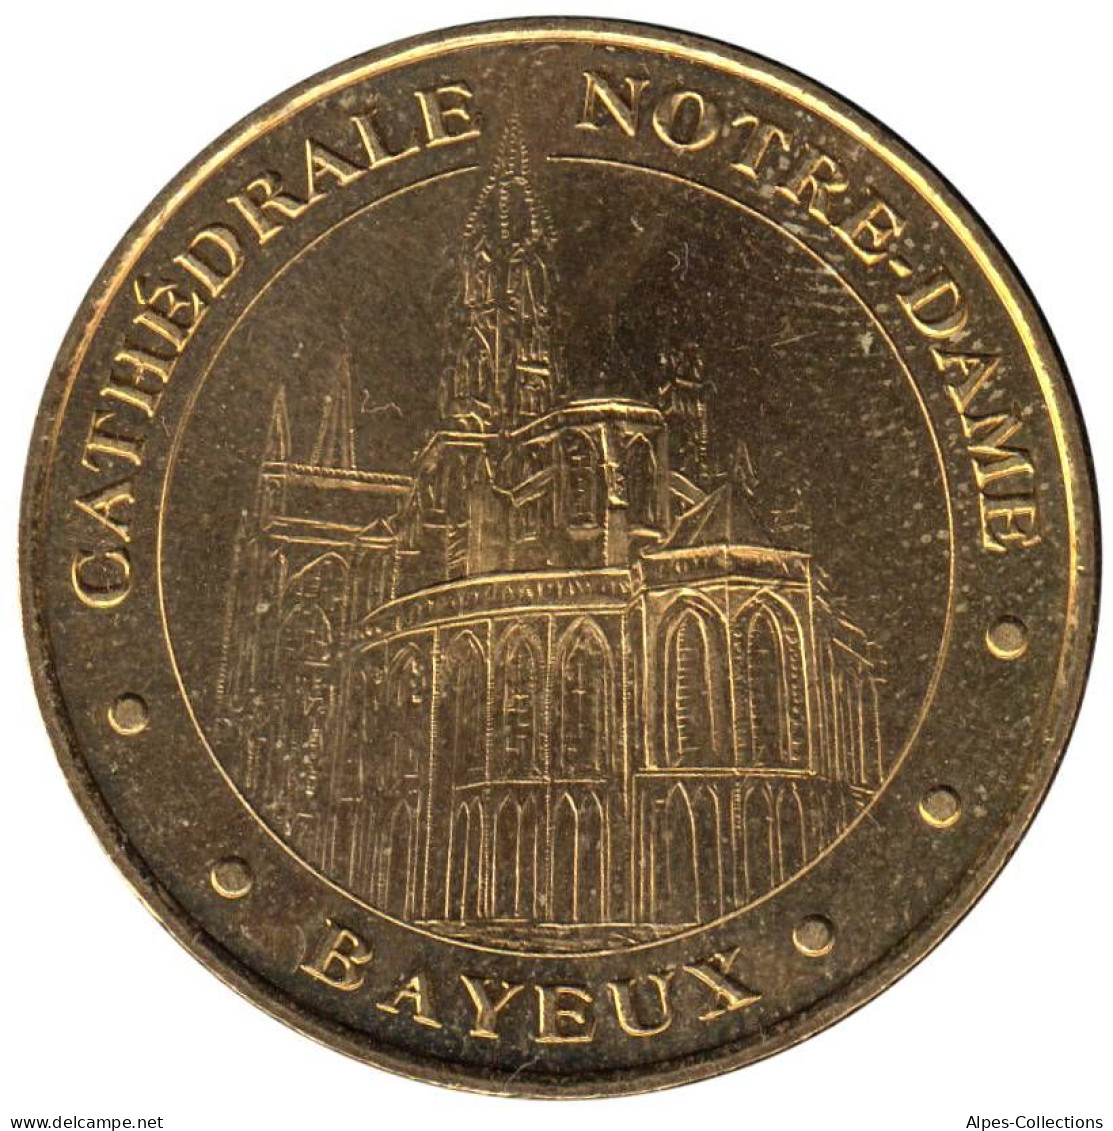 14-0411 - JETON TOURISTIQUE MDP - Bayeux - Cathédrale Notre-Dame - 2007.1 - 2007